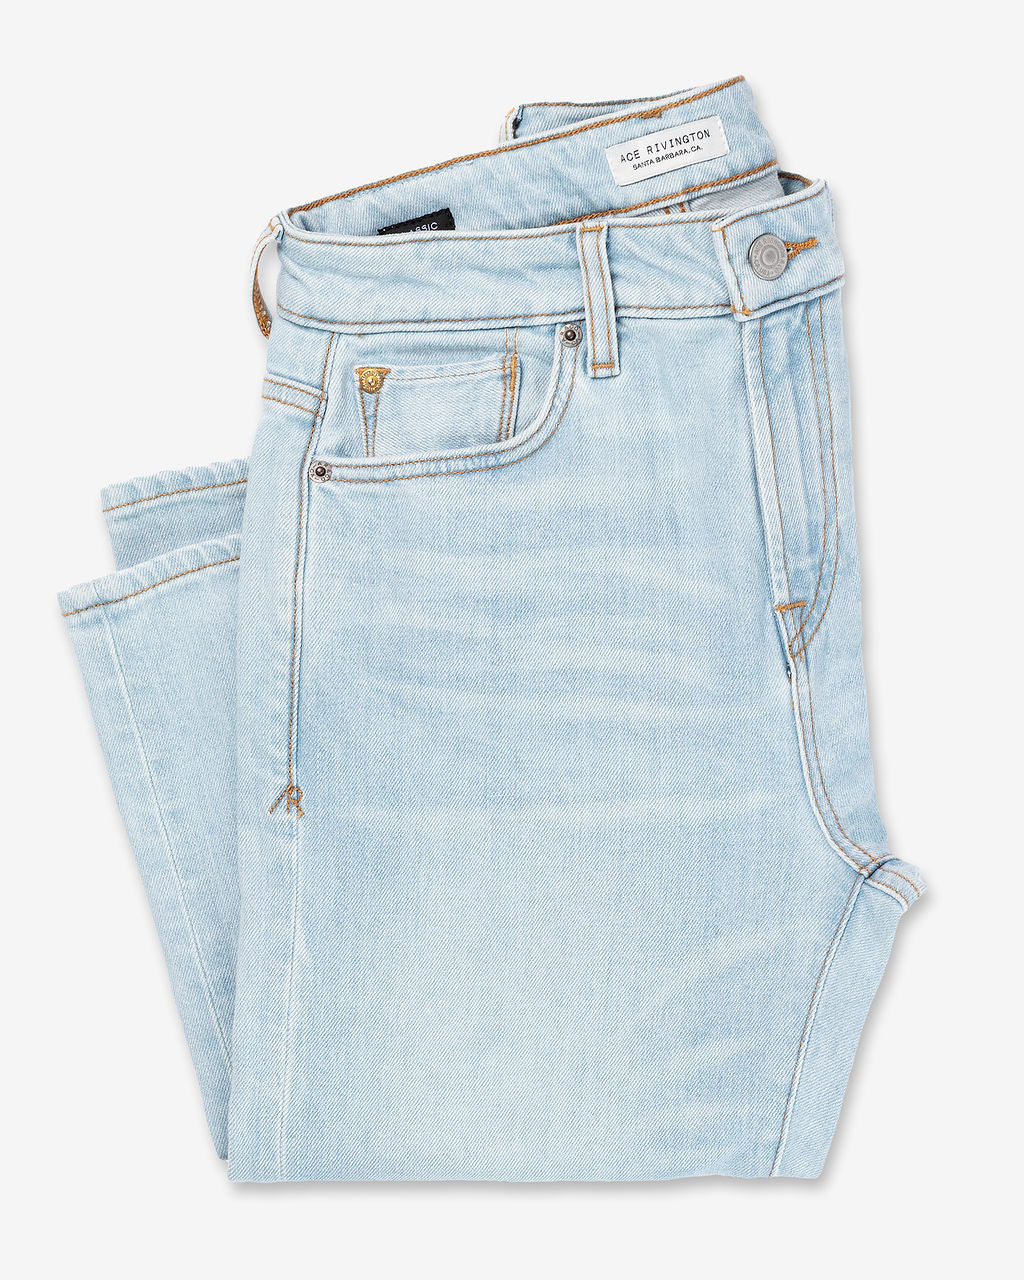 Women's Classic Straight Comfort Denim Jeans - Super Light – Ace Rivington